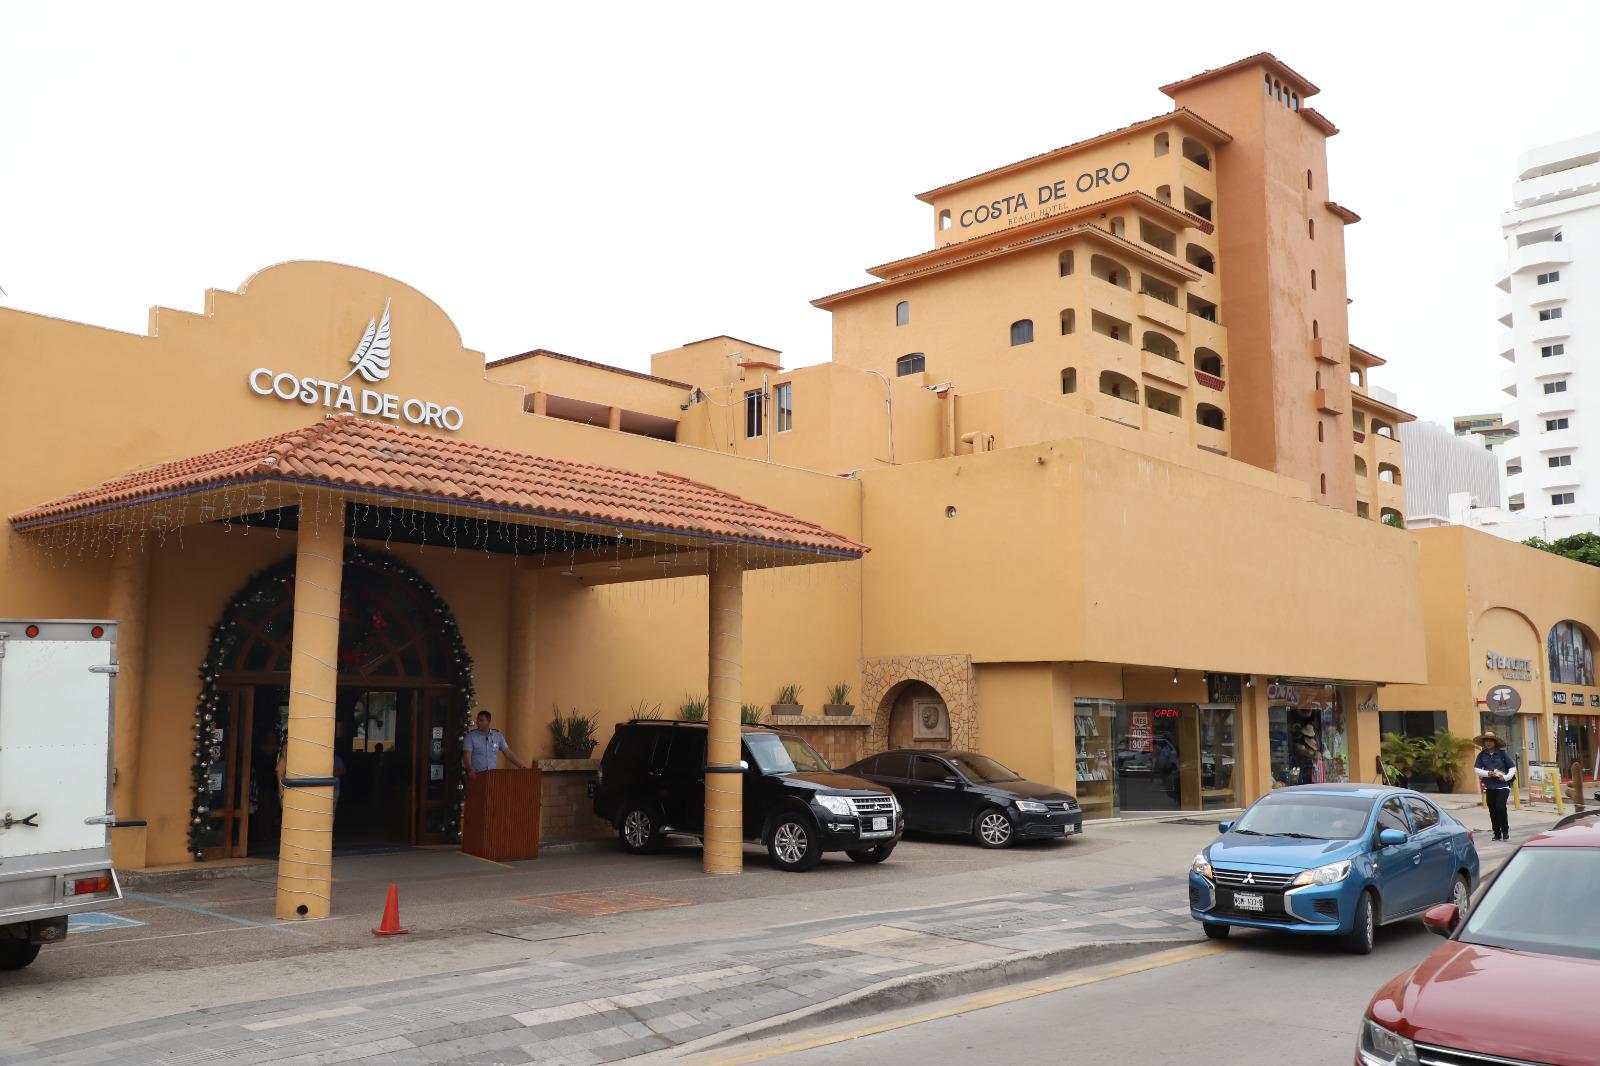 $!El Hotel Costa de Oro tiene sus colores naranja, rojizo, ya patentados y que asemejan una puesta de sol. Actualmente con 289 habitaciones.